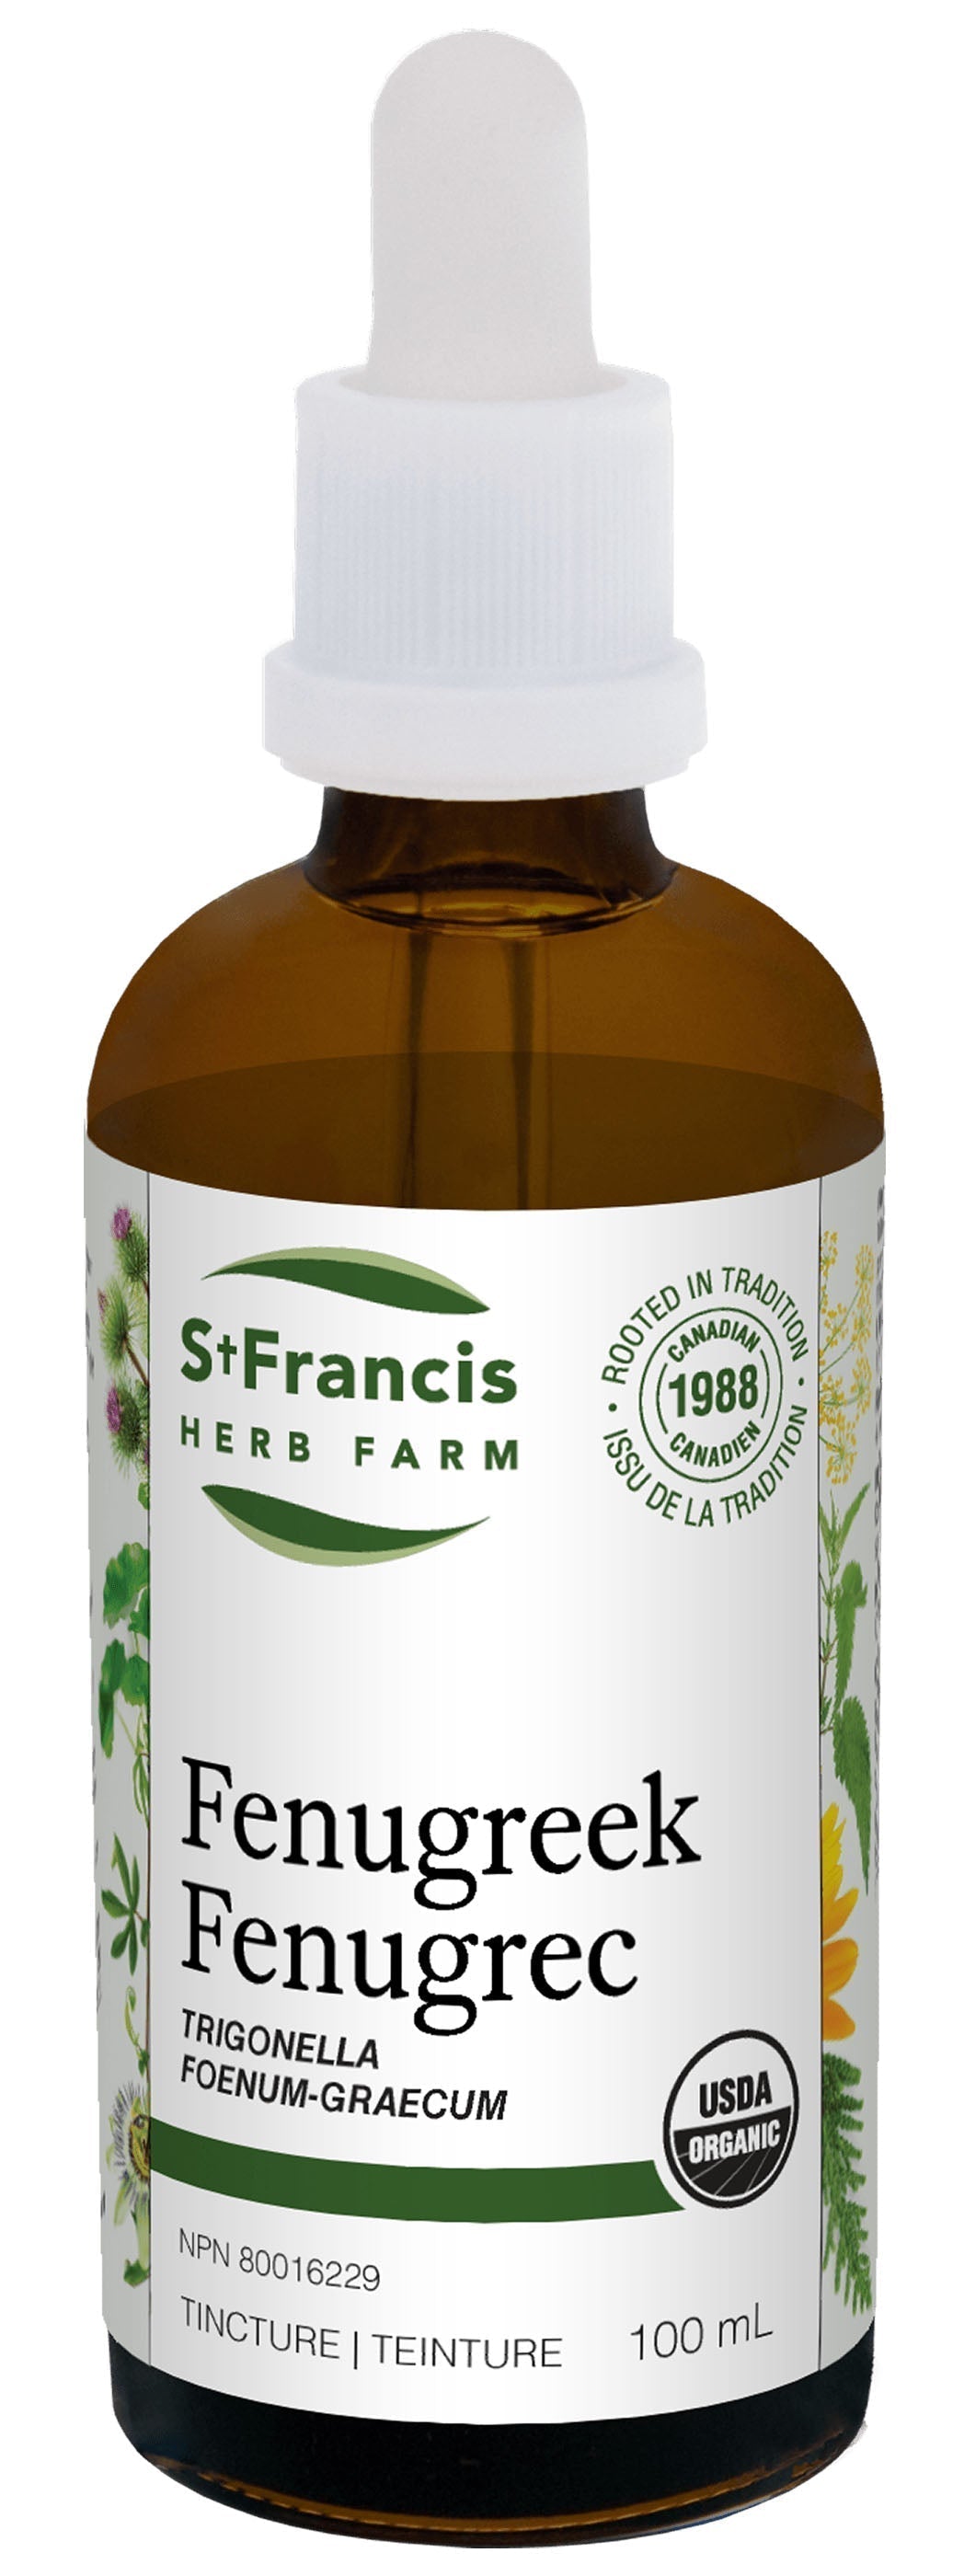 ST FRANCIS HERB FARM Fenugreek (100 ml)